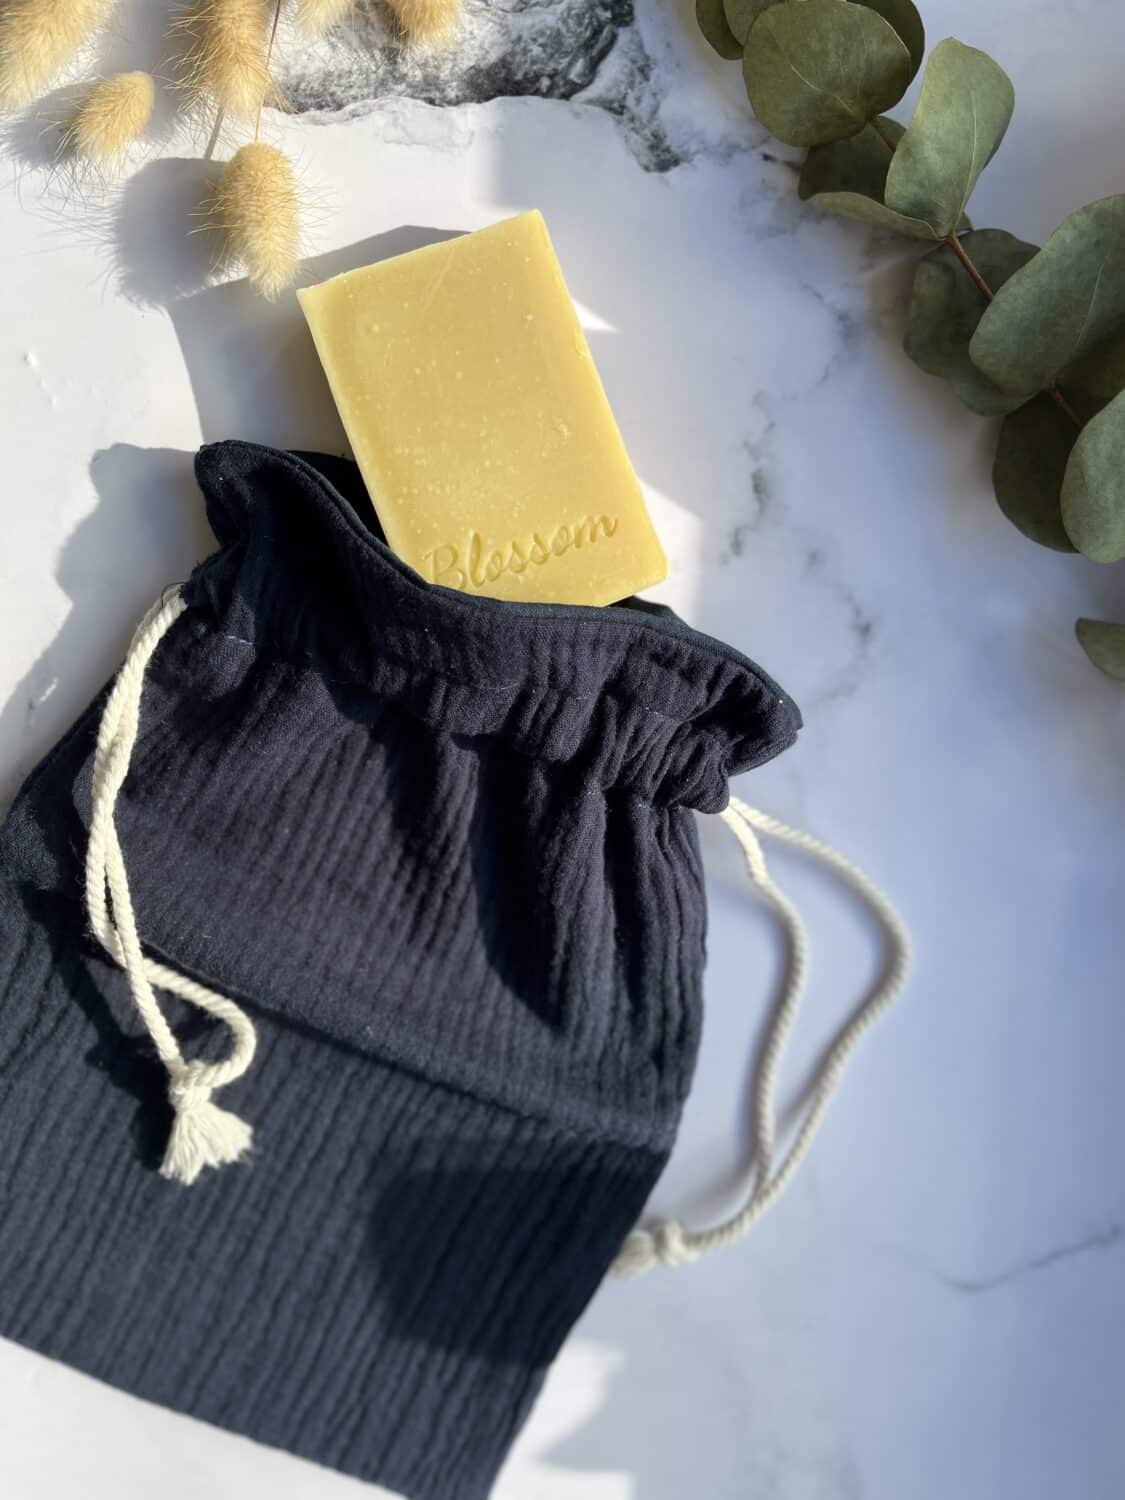 pochette savon - pochette gaze de coton - accessoire zéro déchet